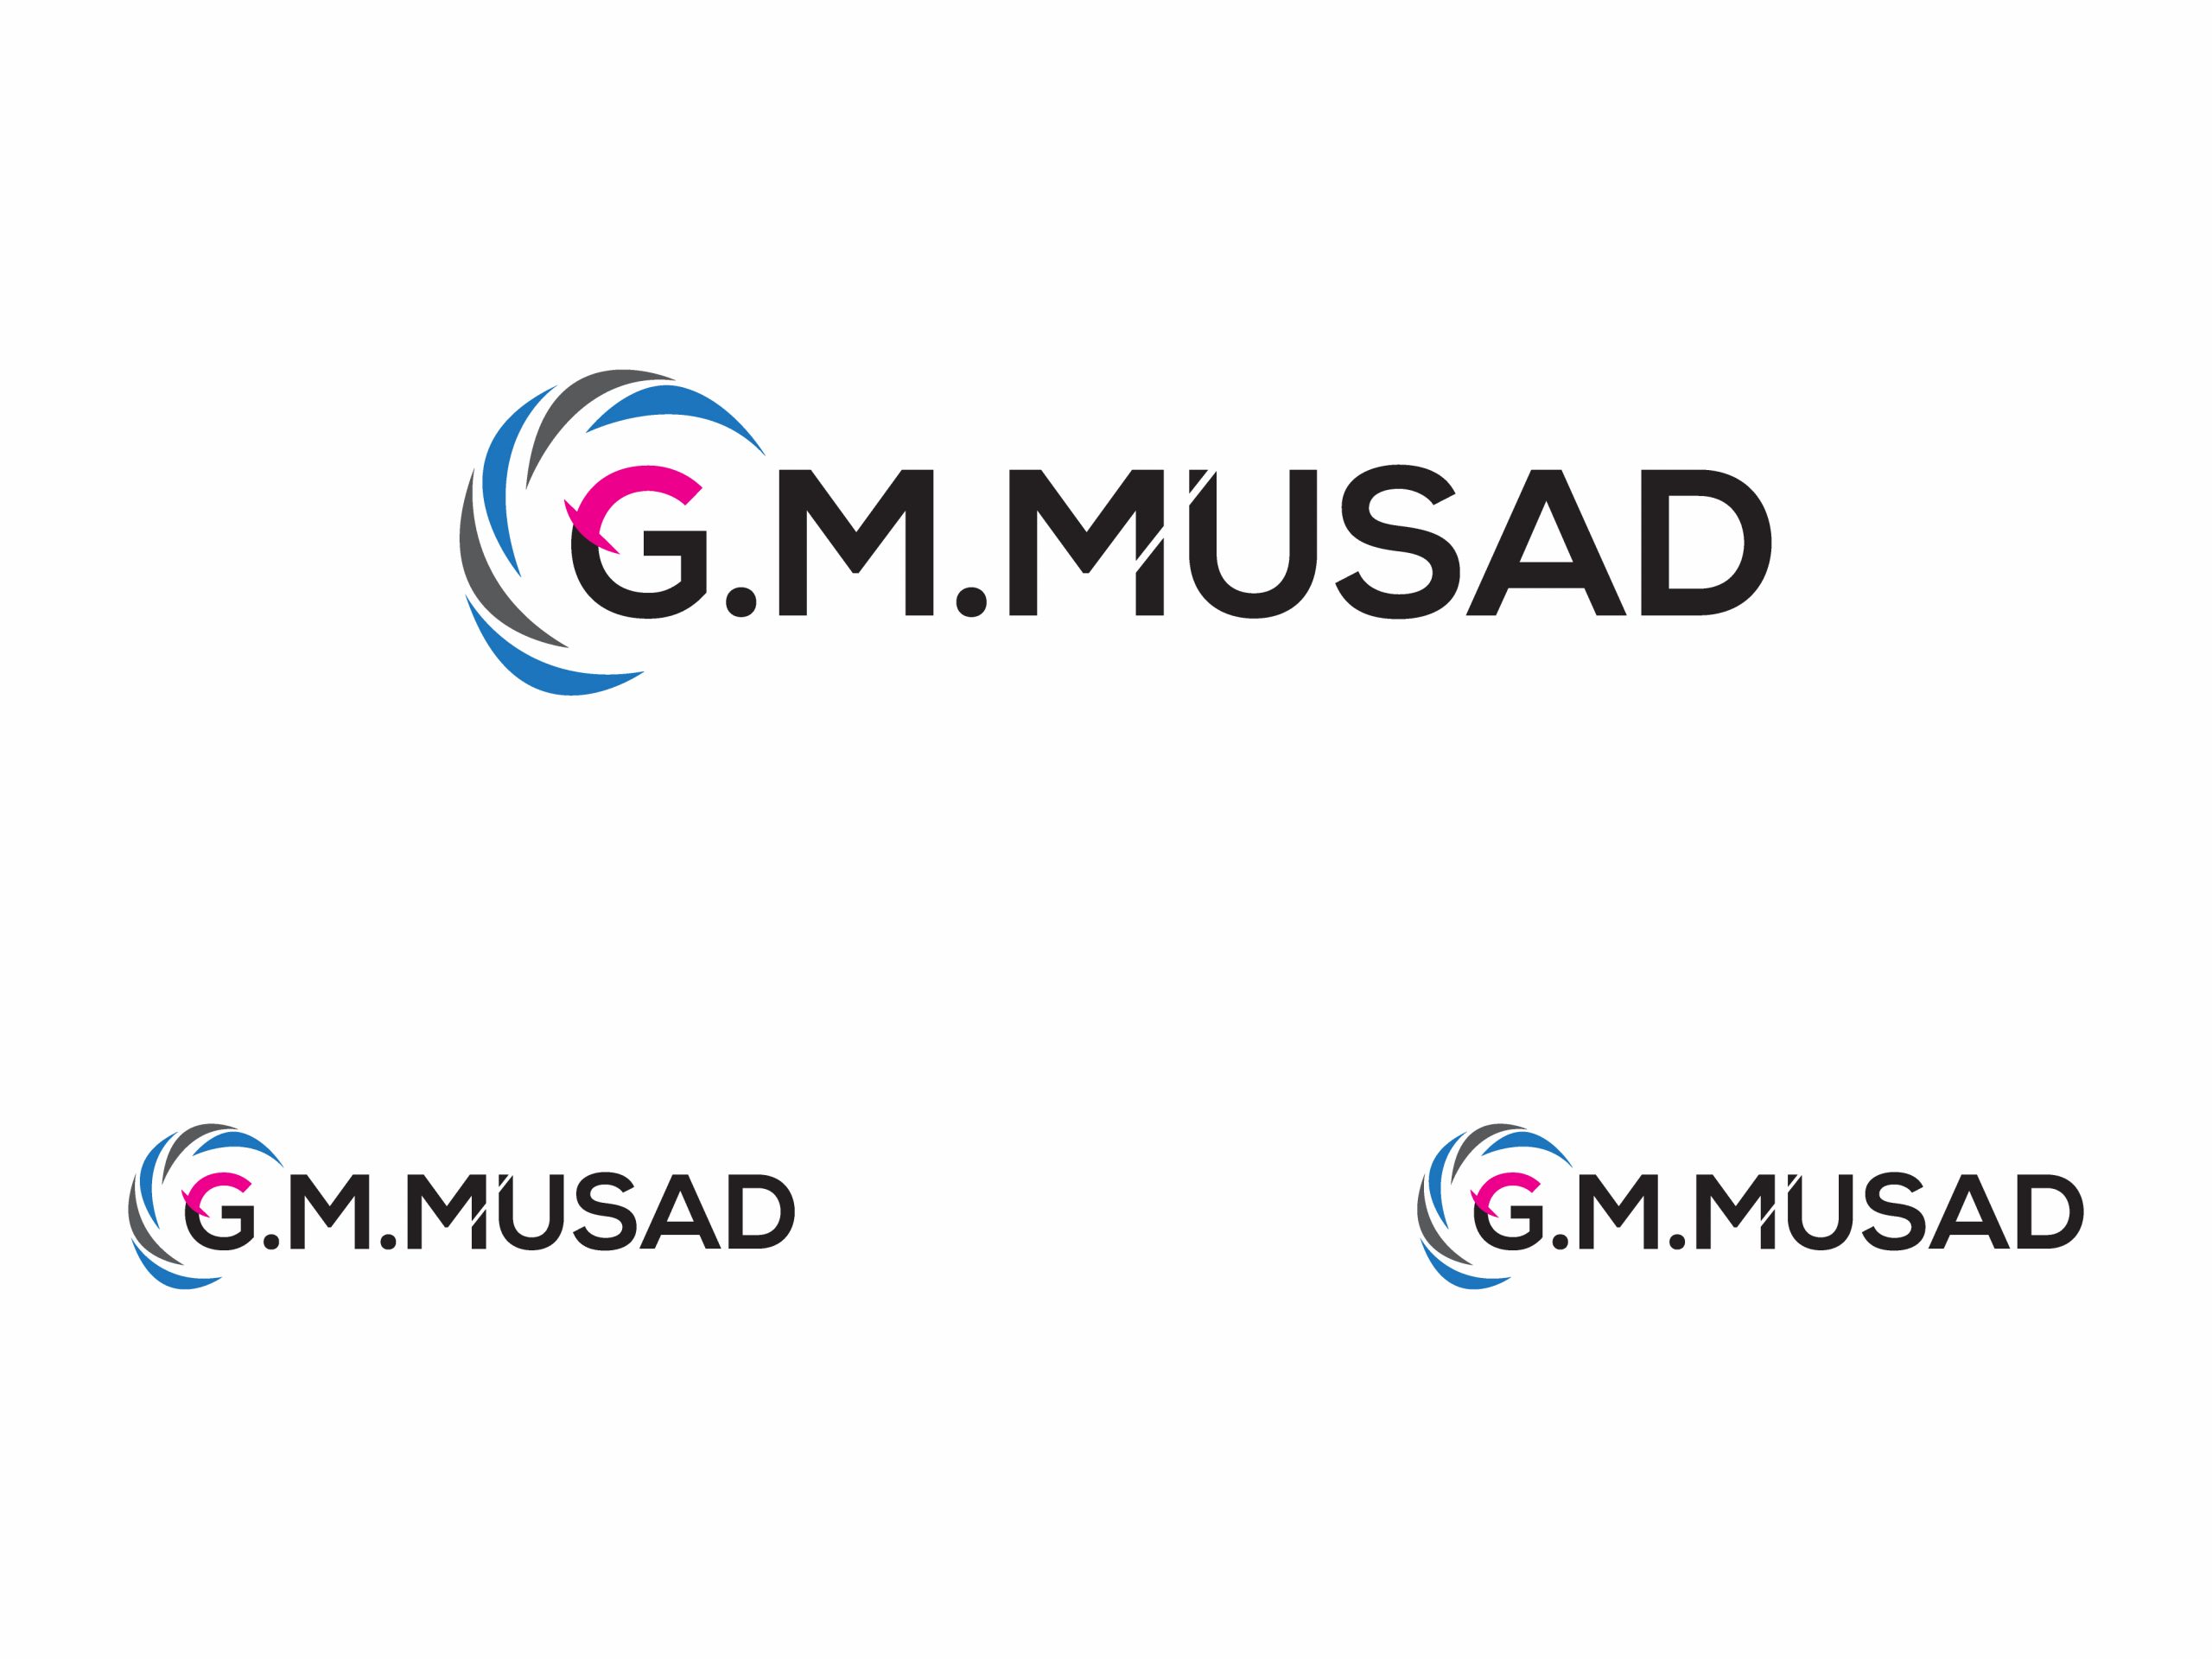 G.M.MUSAD_